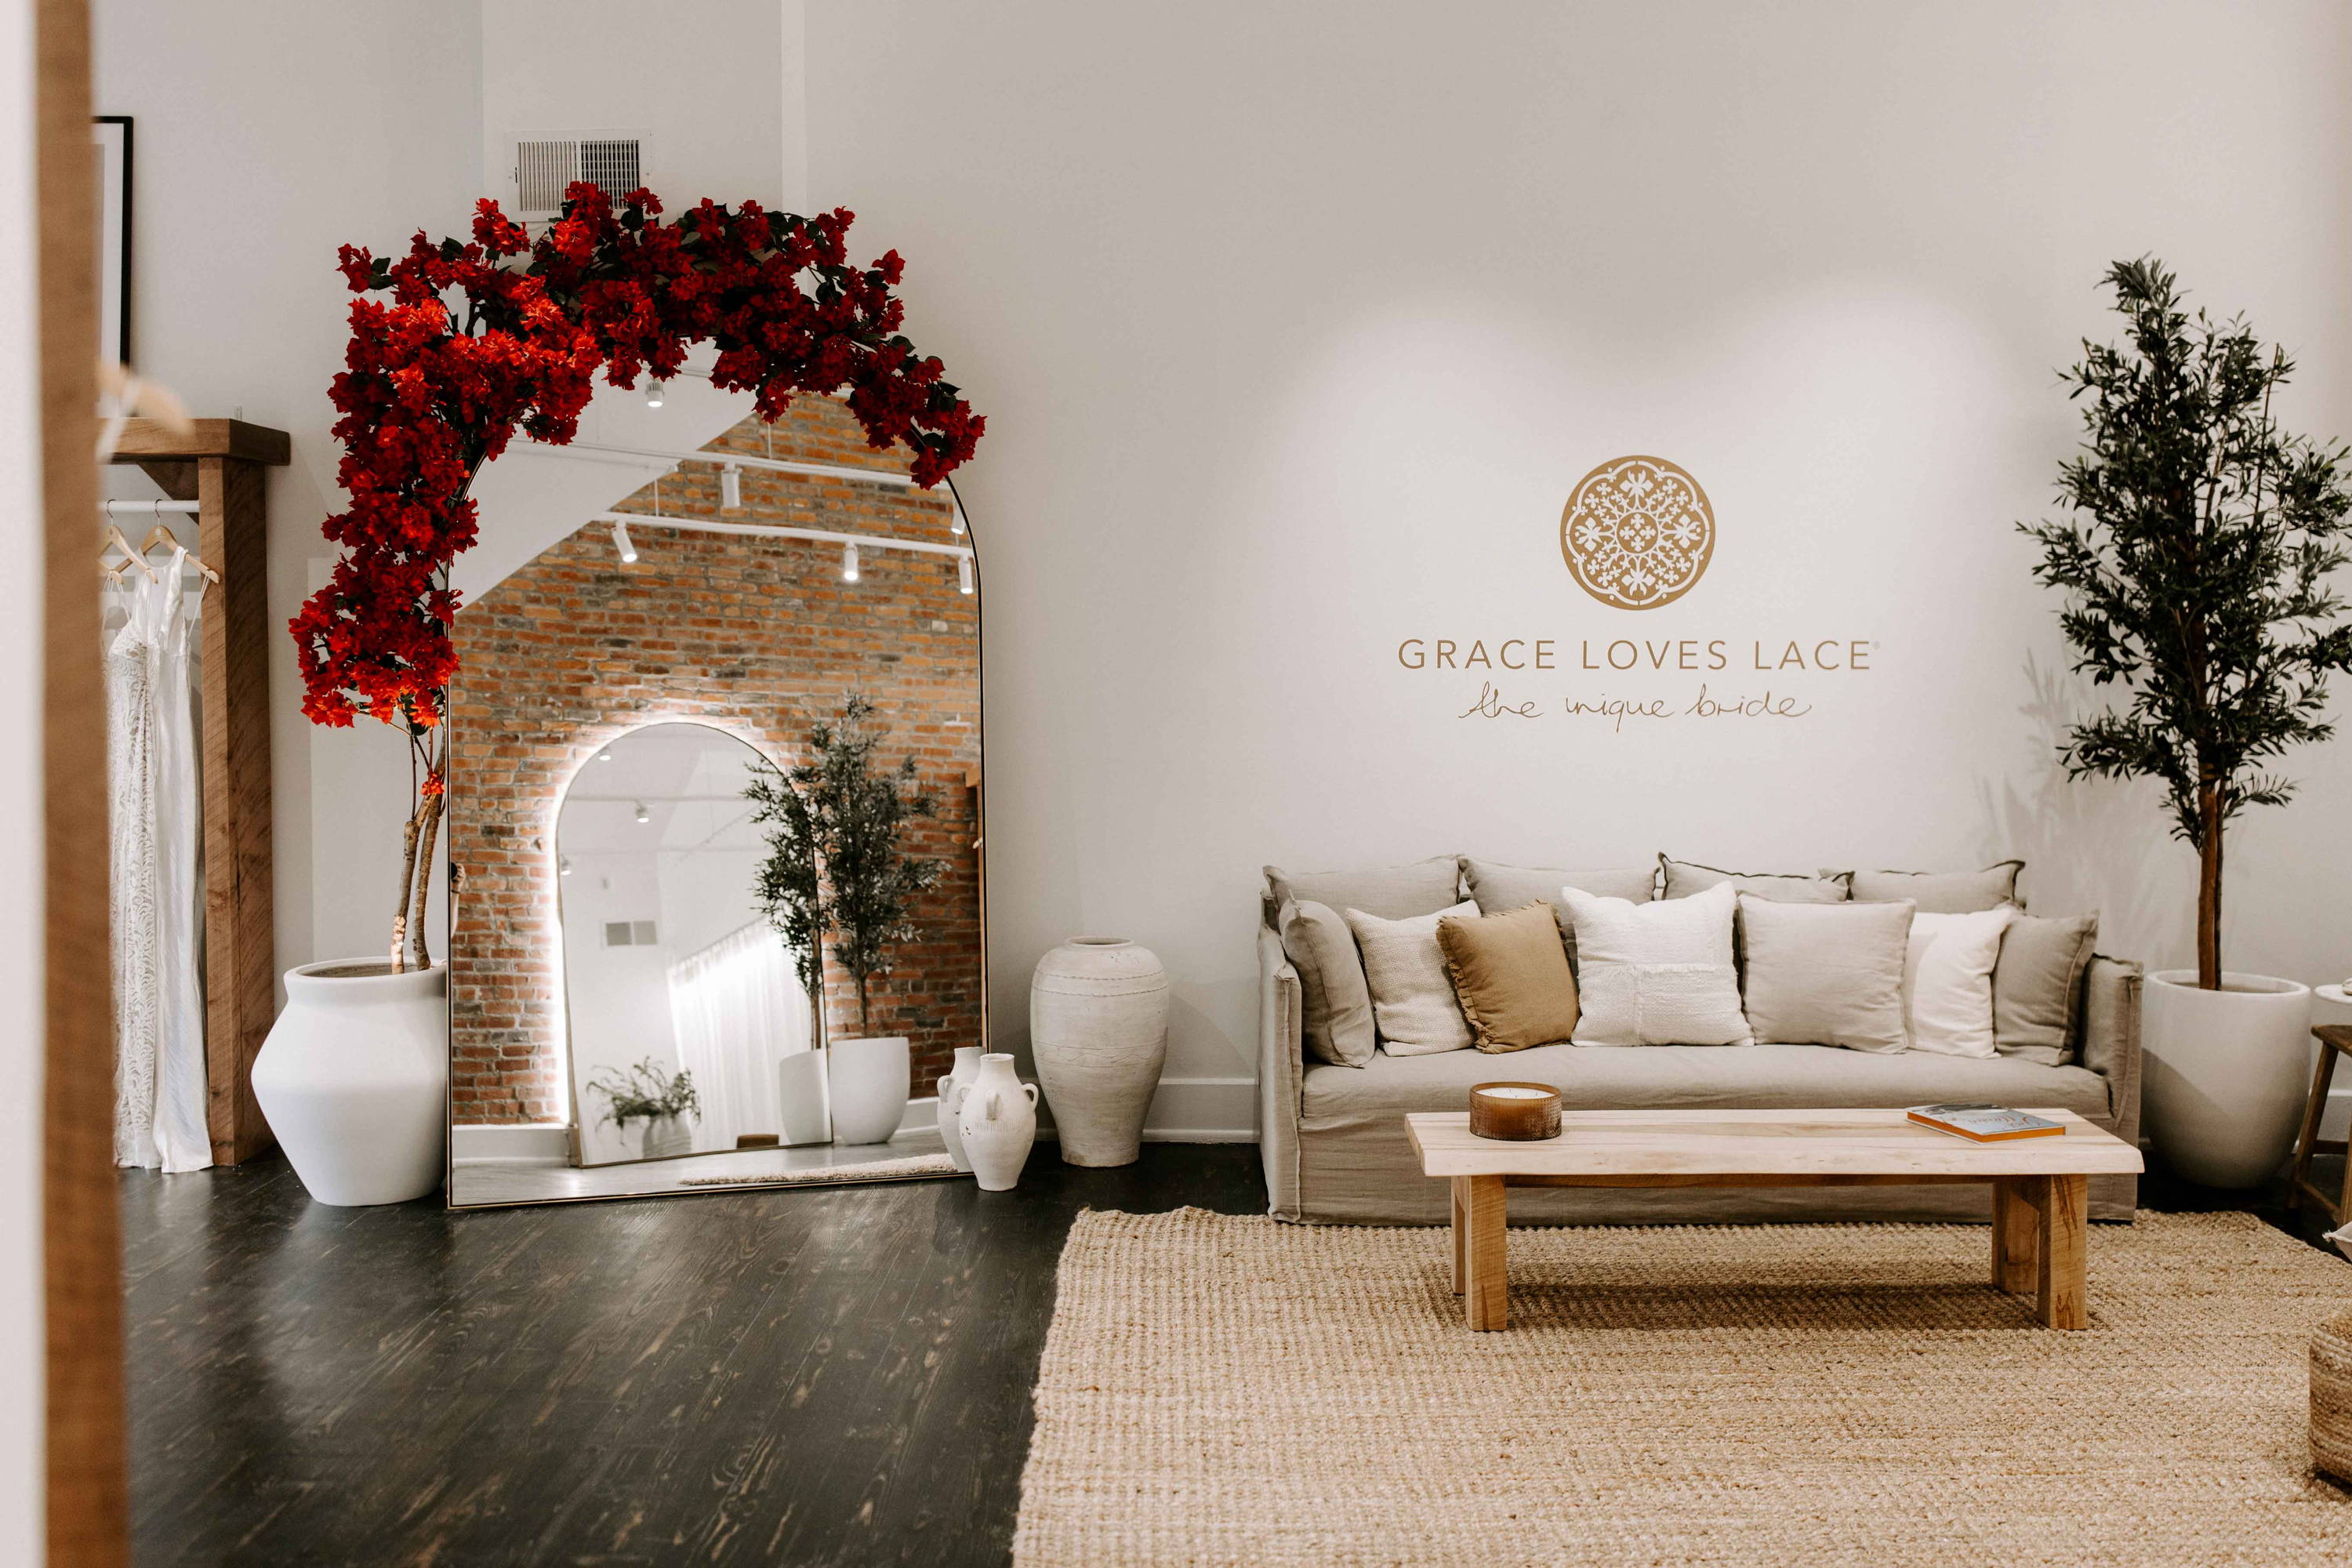 Sofá beige, arreglo floral rojo en el espejo y el logotipo de Grace Loves Lace en la pared blanca